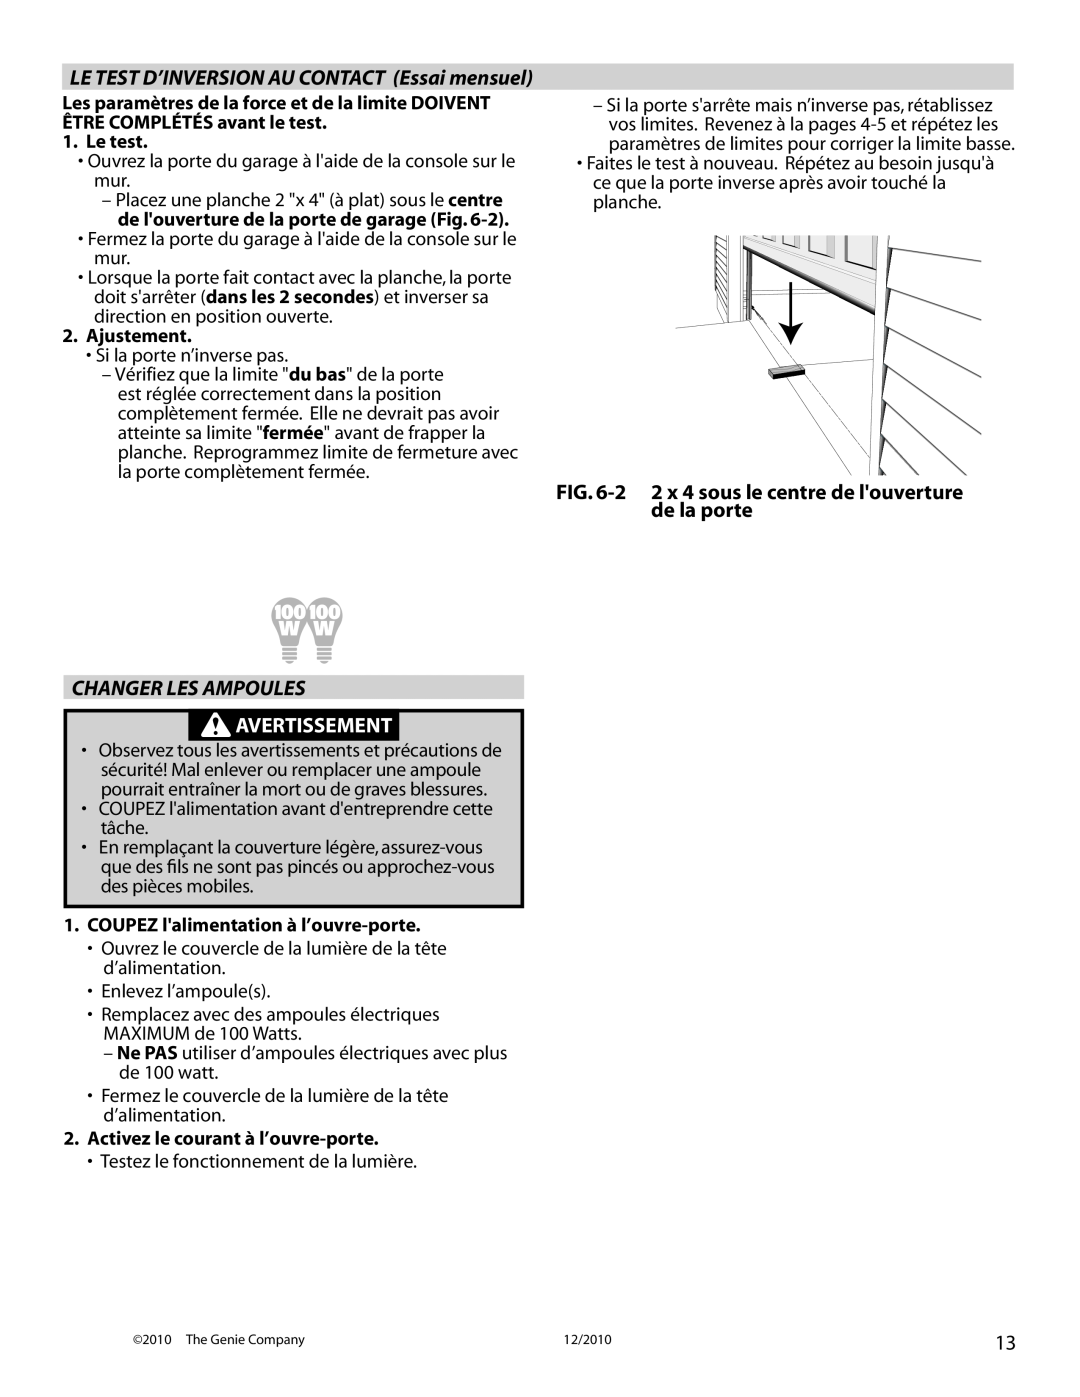 Genie 4042 manual 2 2 x 4 sous le centre de louverture de la porte, Changer Les Ampoules, Avertissement 